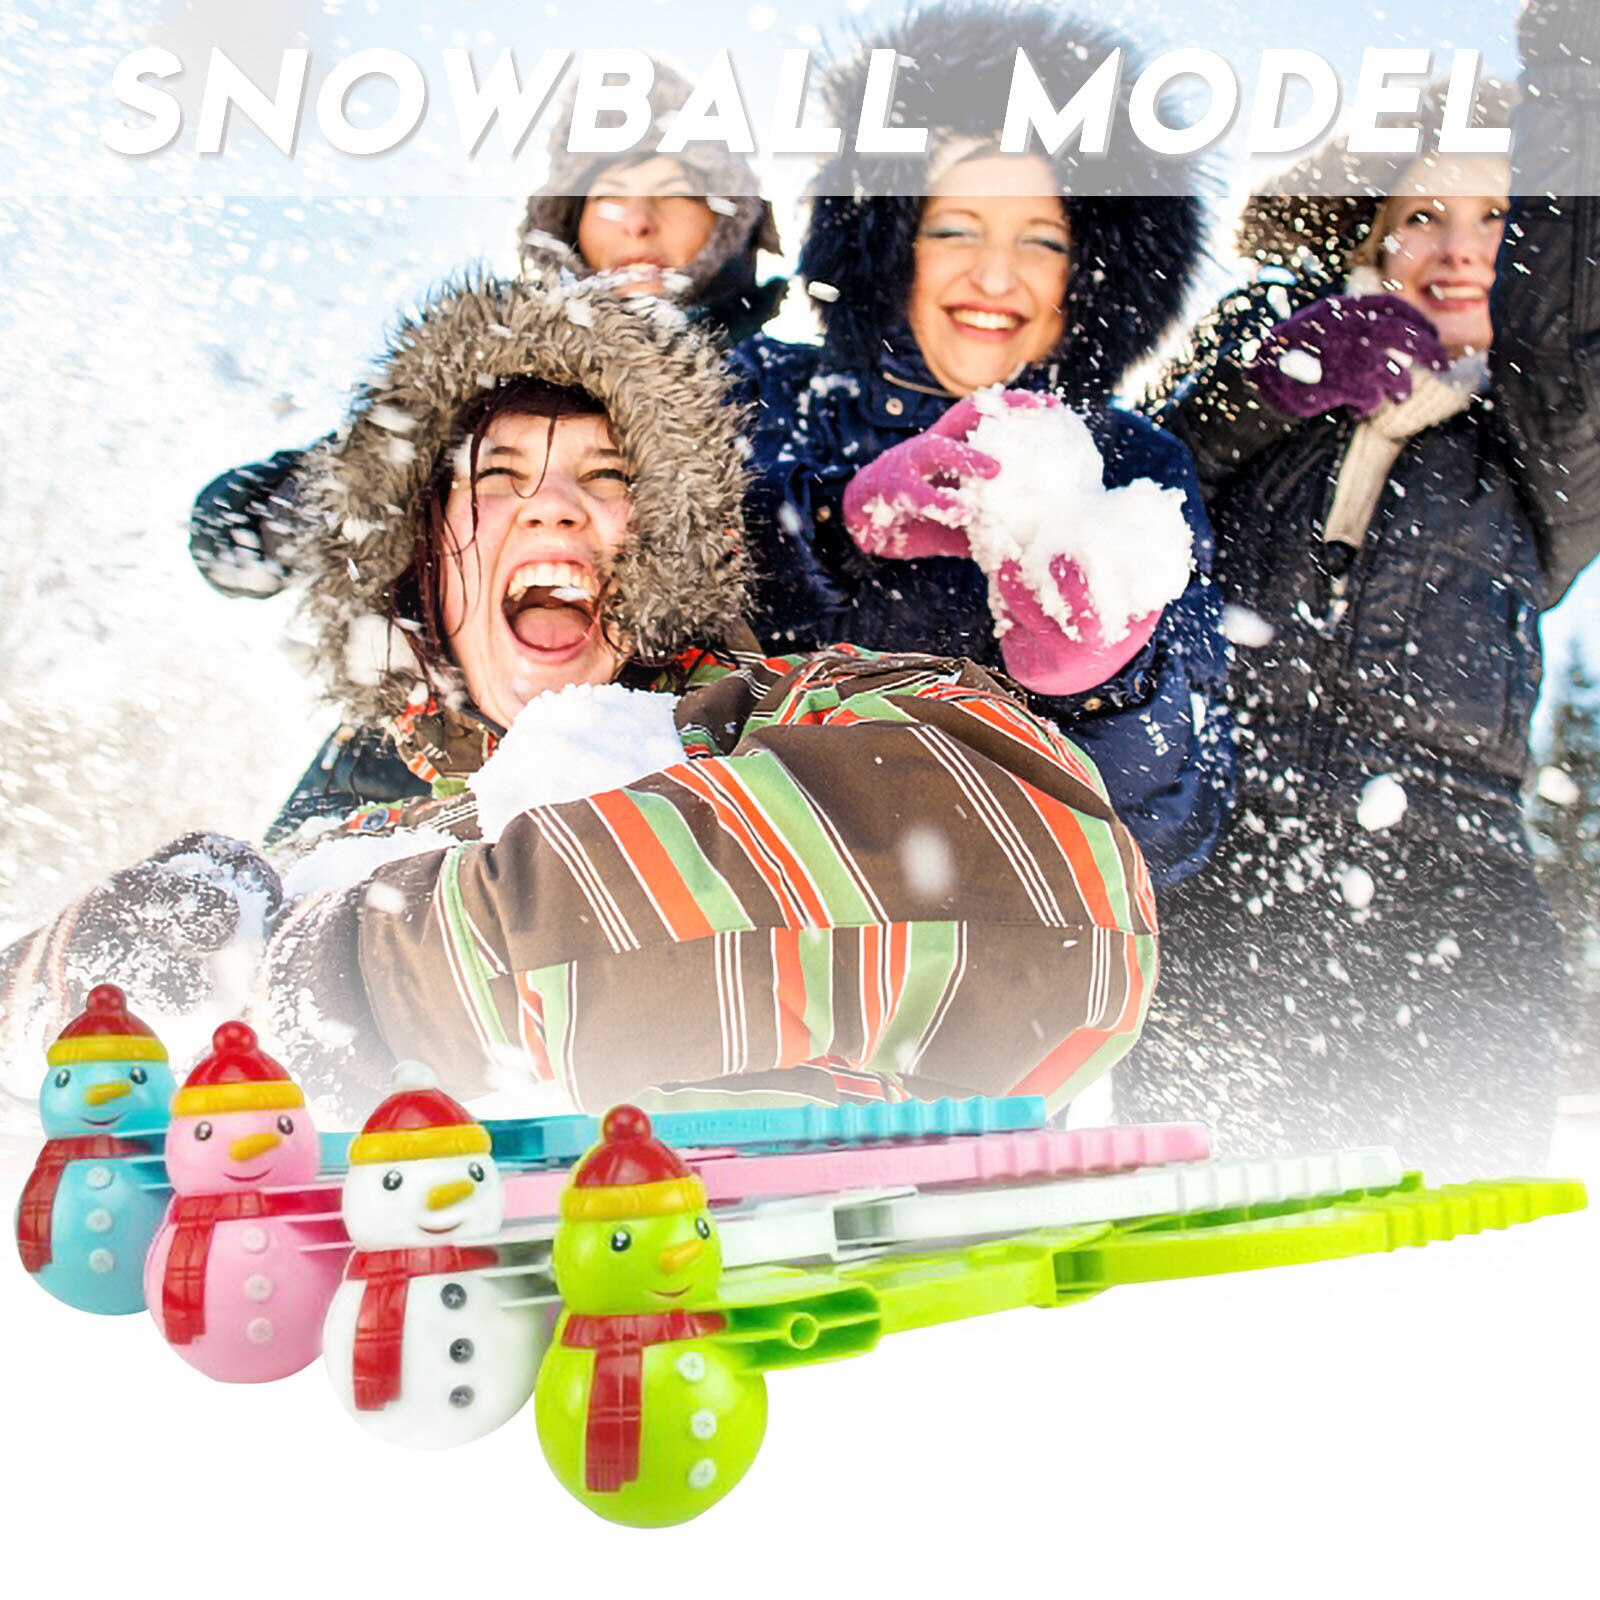 Sneeuwpop Sneeuwbal Maker Tool Met Handvat Voor Sneeuw Bal Gevechten Voor Kids Volwassenen Sneeuwbal Maker Clip Outdoor Winter Fun Sport speelgoed